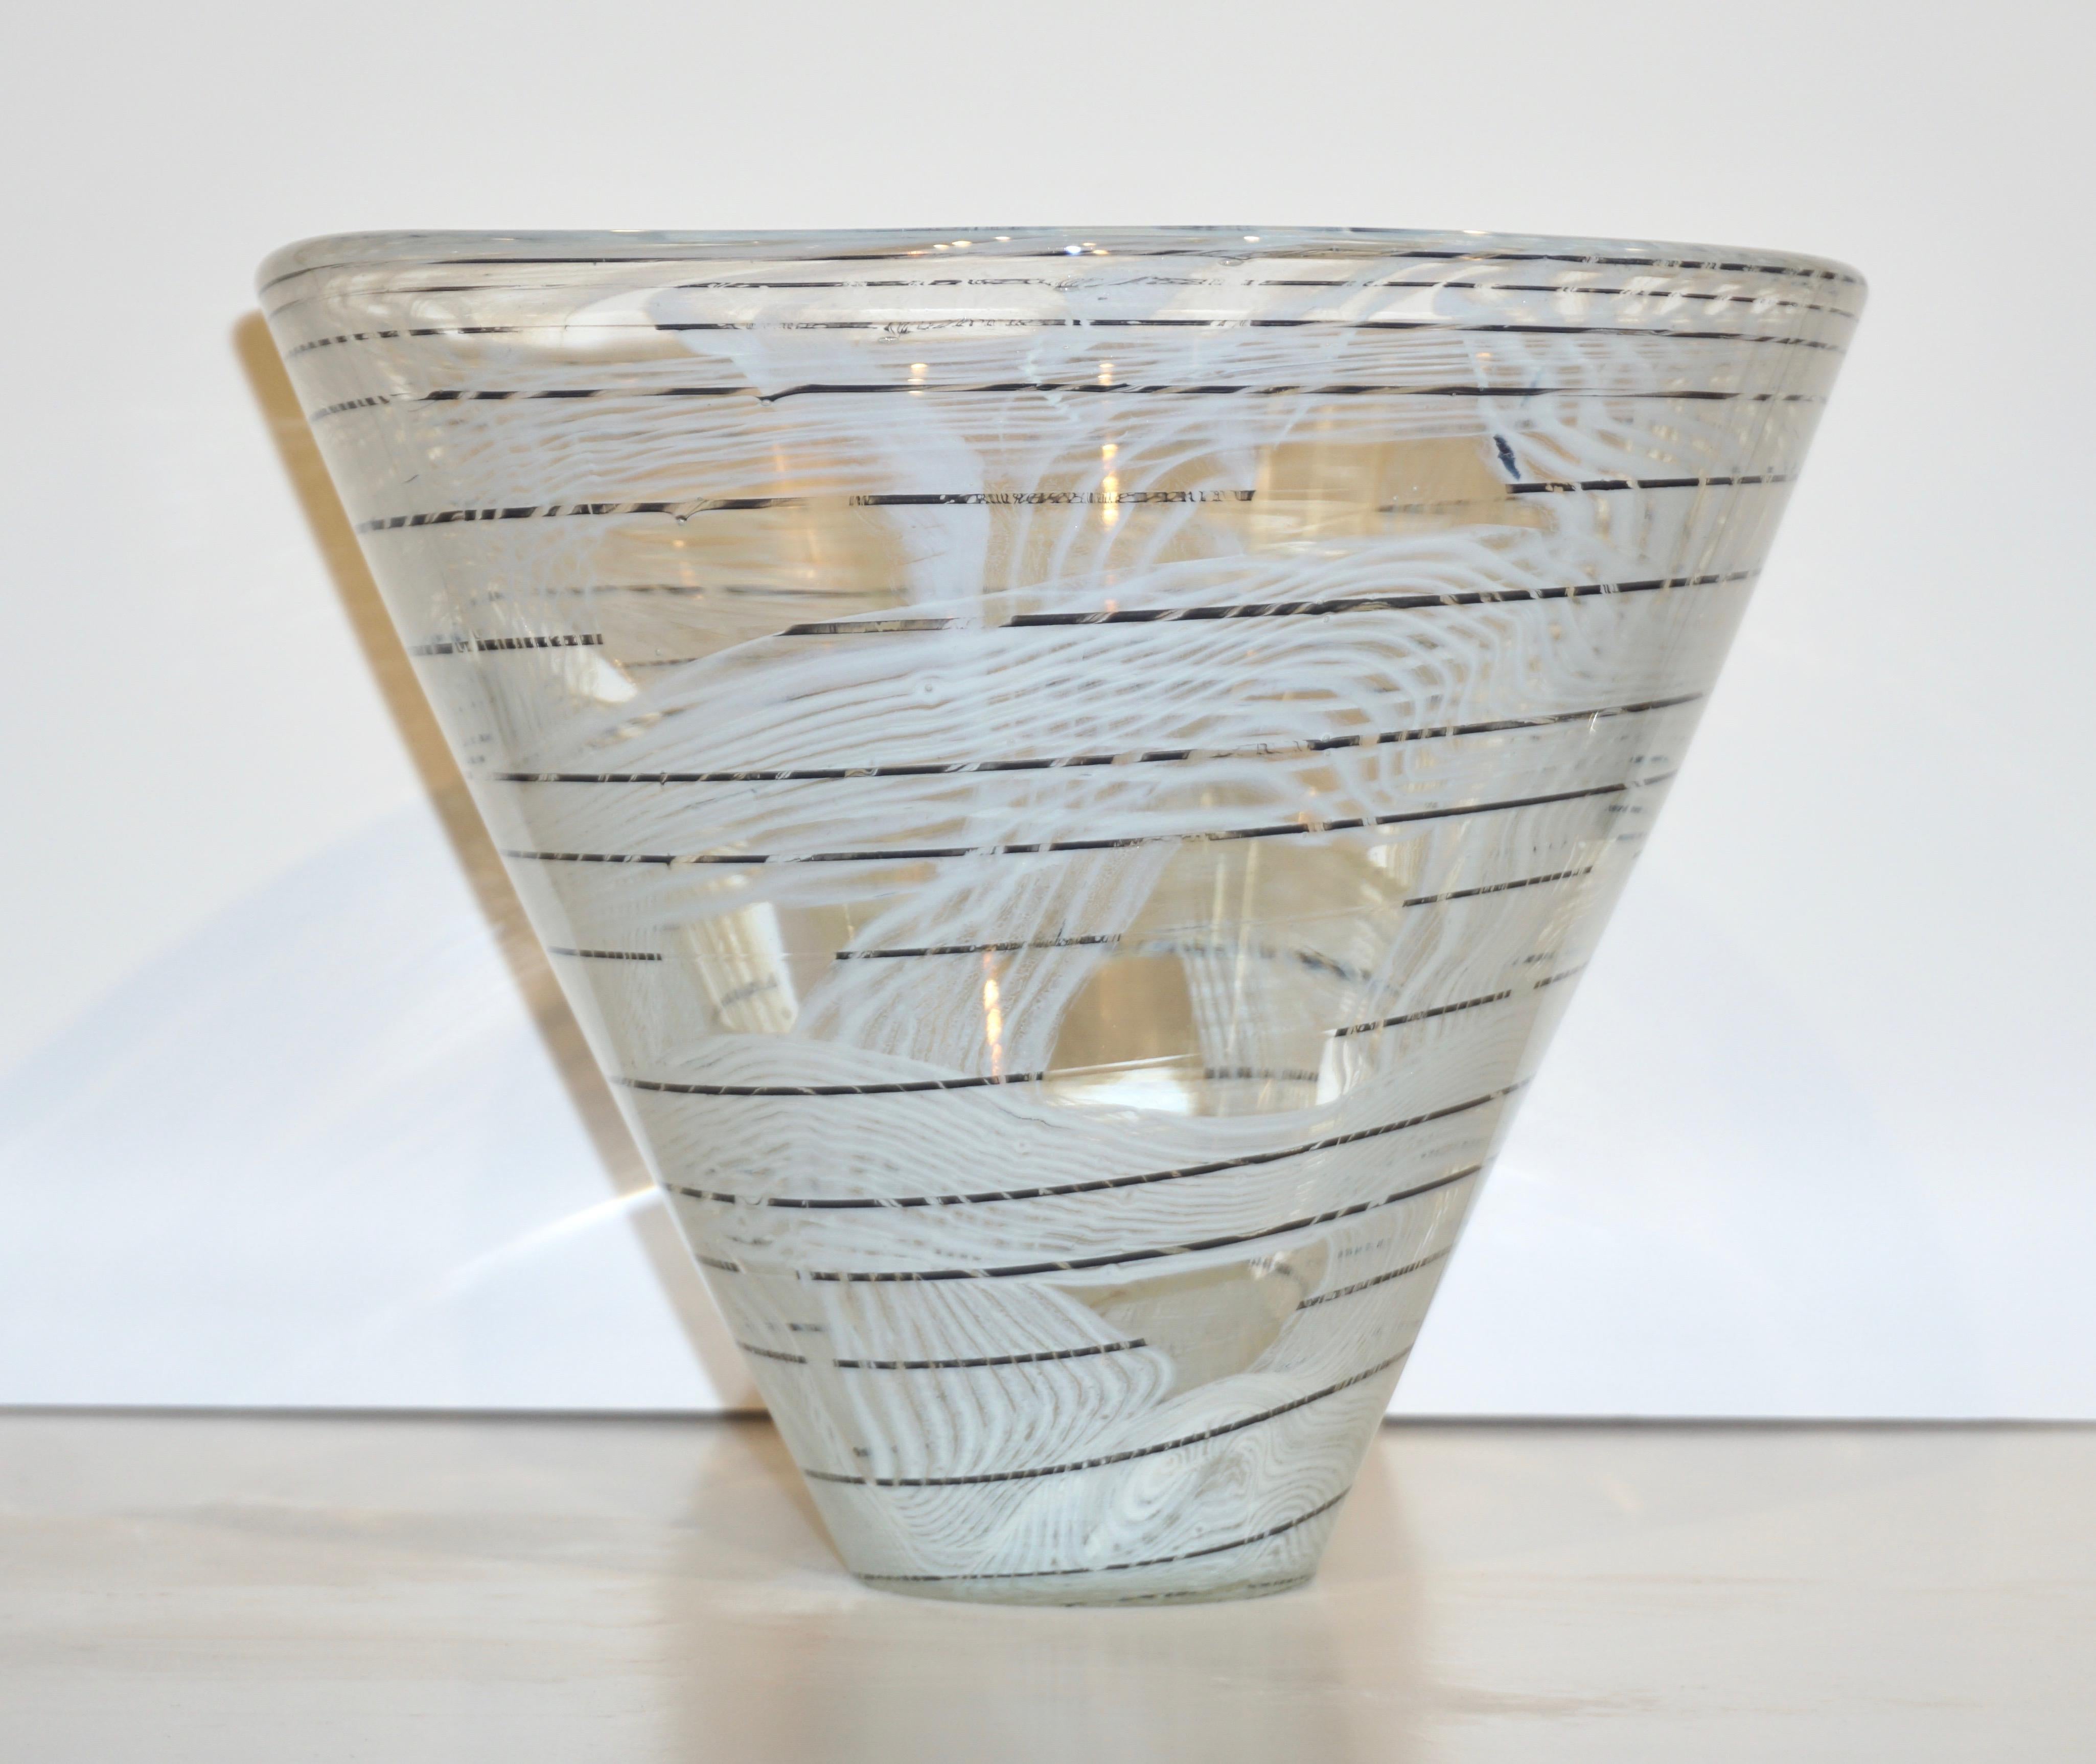 Seltenes italienisches Vasenpaar aus den 1950er Jahren, signiert Venini Murano, mundgeblasen aus kristallklarem Muranoglas in organischer, konischer Form, verziert mit einer schwarzen, spiralförmigen Linie, die weißes Muranoglas mit abstraktem